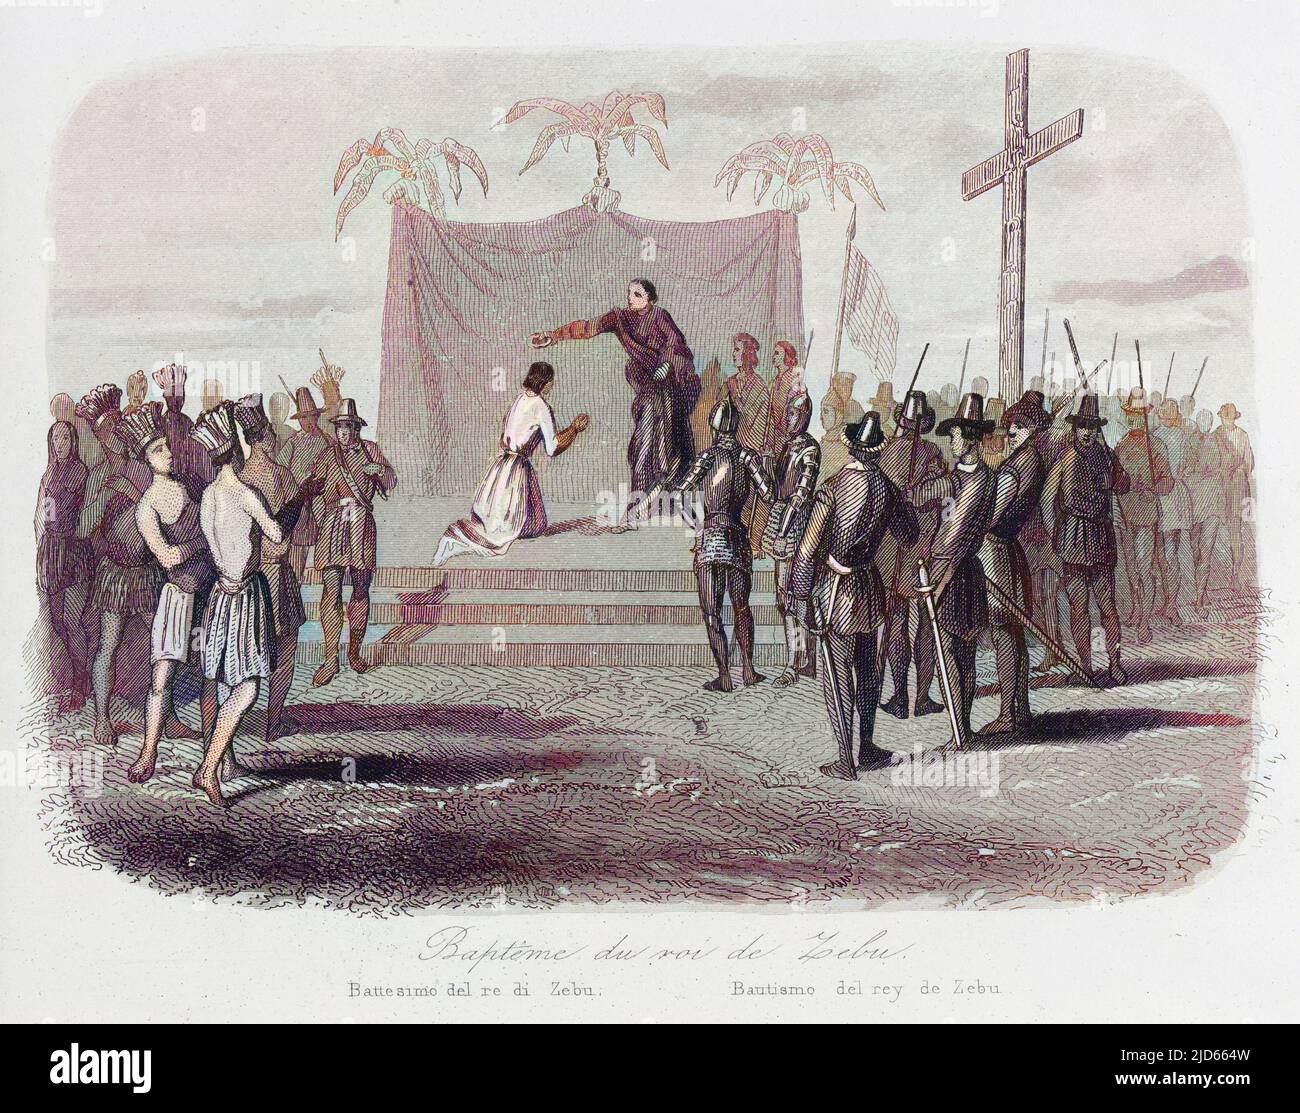 Humabon, König von Cebu auf den Philippinen, wird getauft, als Magelhaes (Magellan) seine Insel besucht. Kolorierte Version von : 10005025 Datum: 14. April 1521 Stockfoto